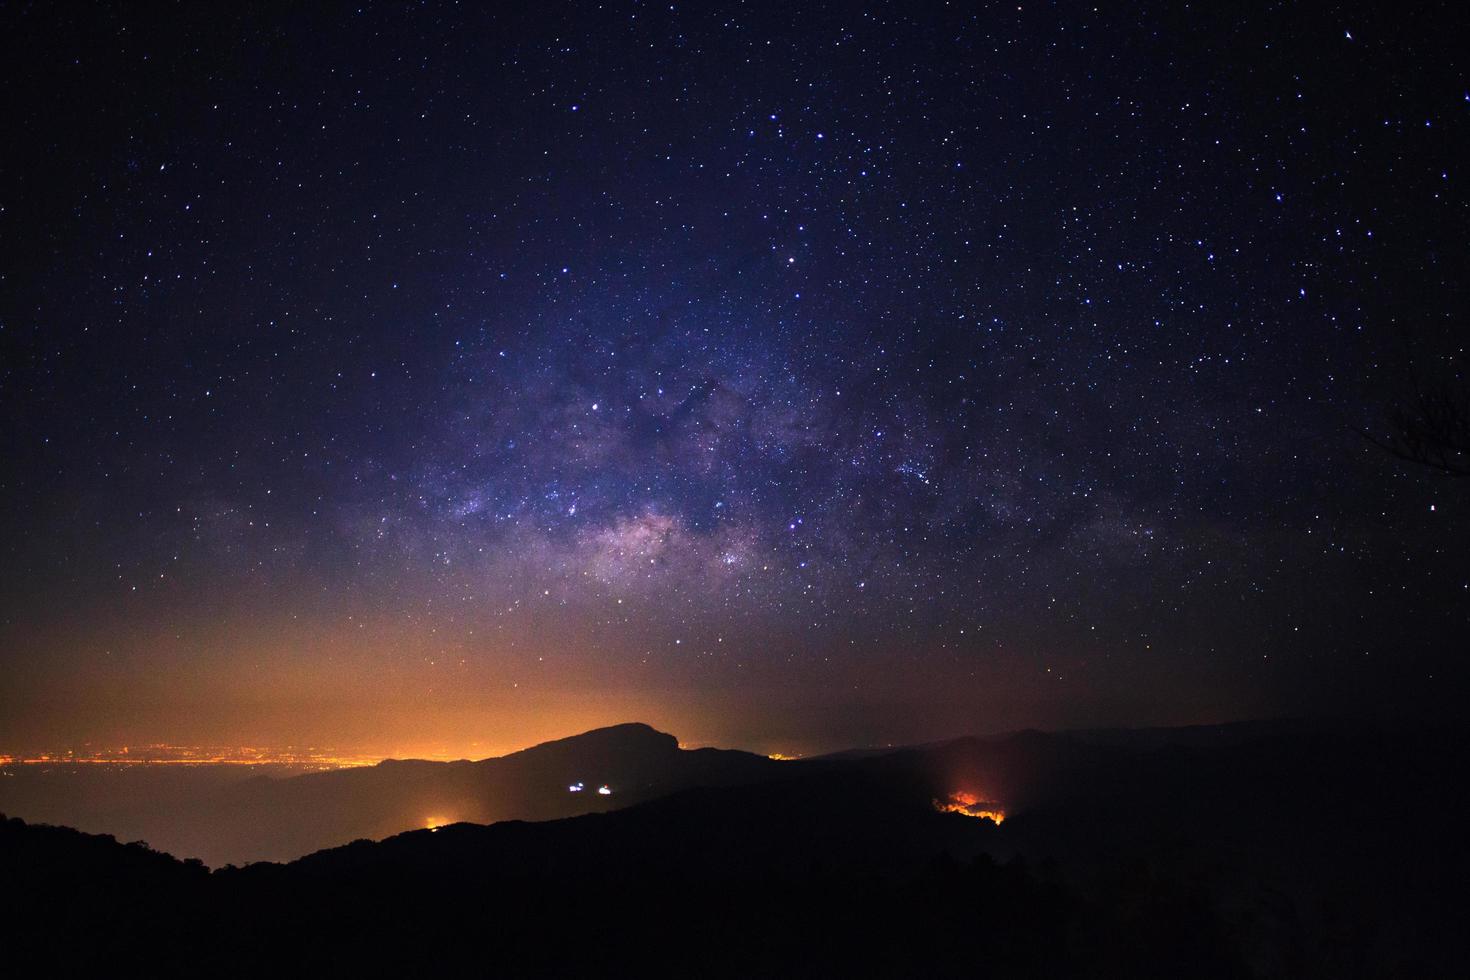 Vintergatans galax med stjärnor och rymddamm i universum vid Doi Inthanon Chiang Mai, Thailand foto